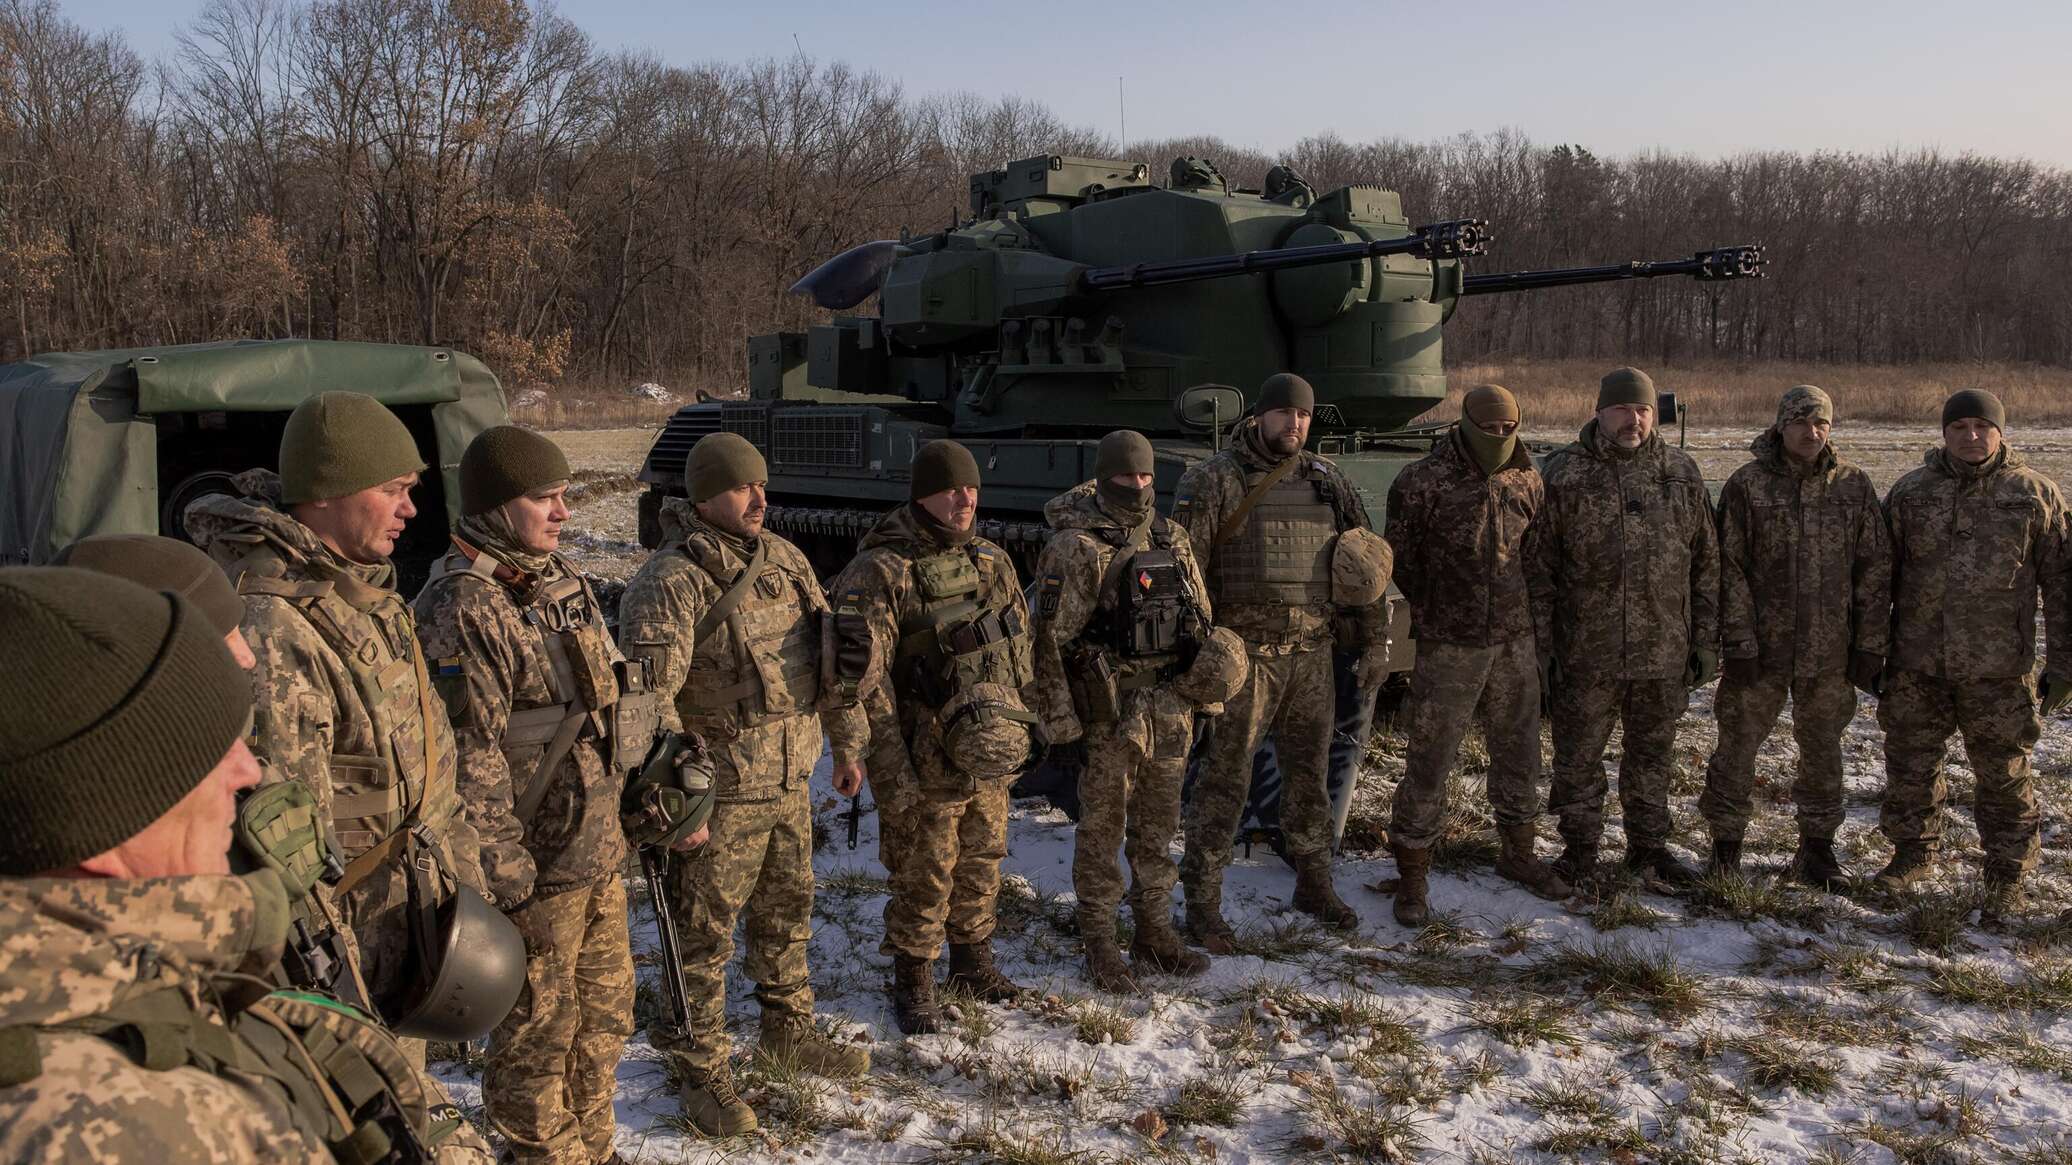 خبير بريطاني: سيرسكي غاضب من استسلام جنود أوكرانيين أدى إلى حل لواء بأكمله